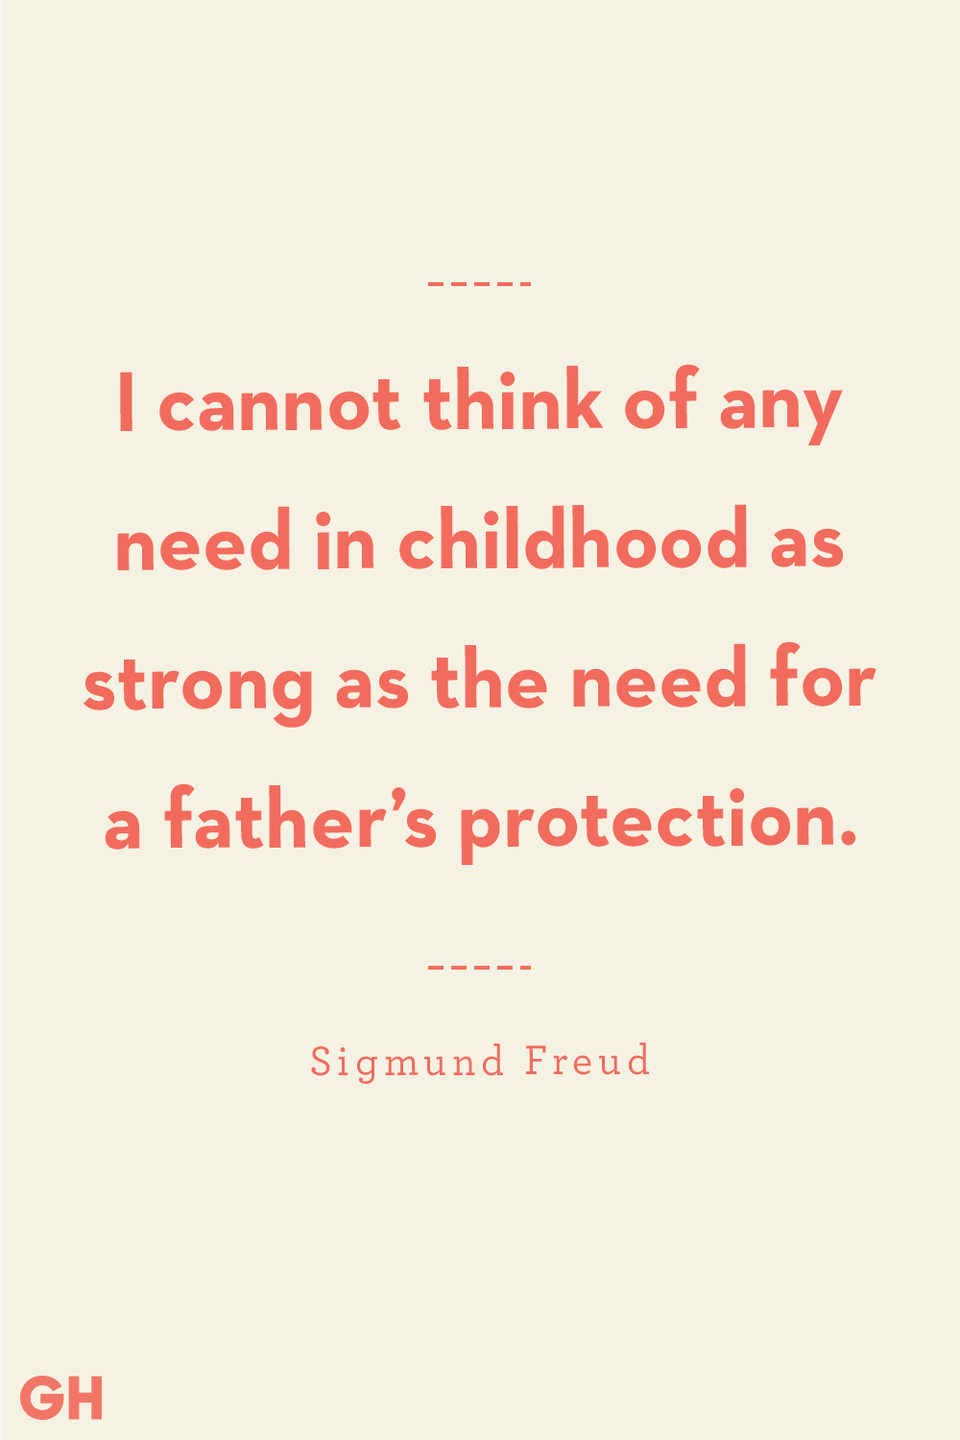 46) Sigmund Freud